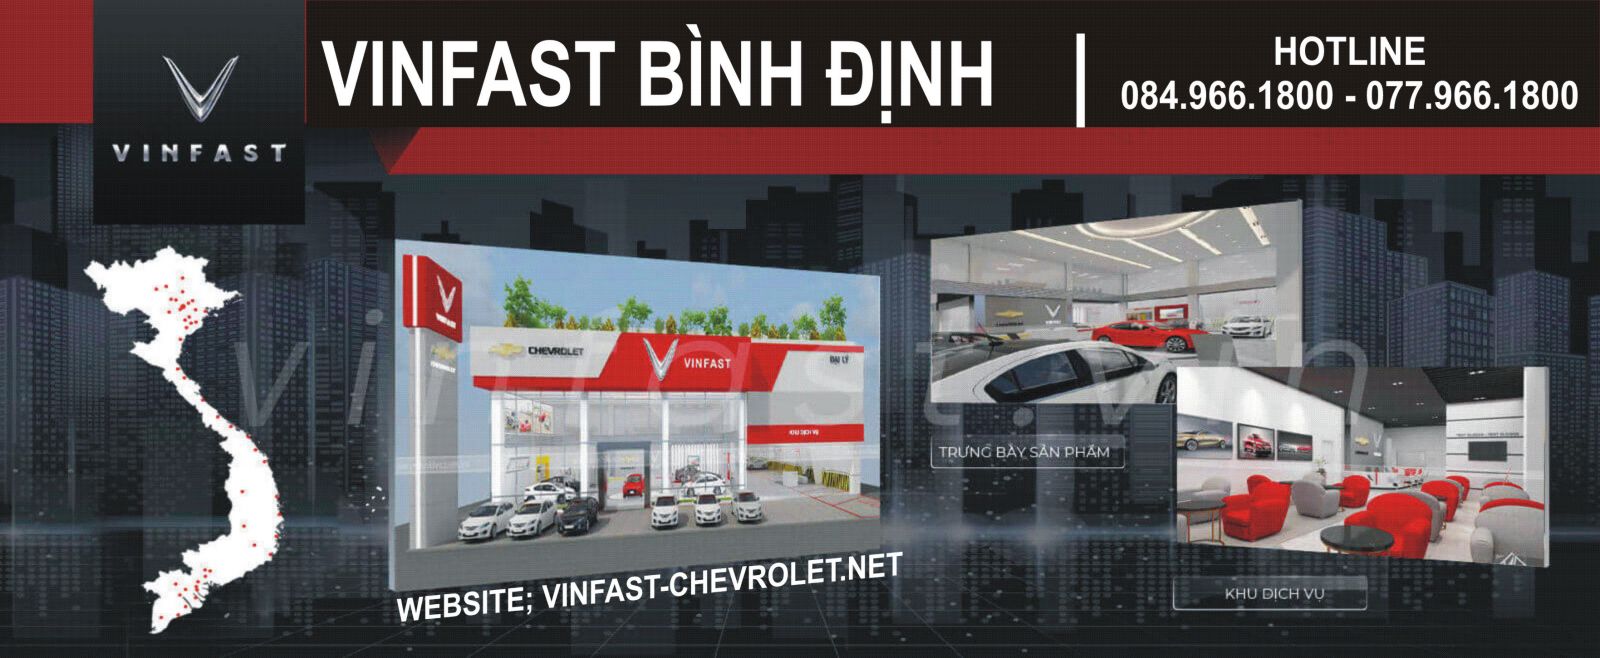 VinFast Binh Dinh